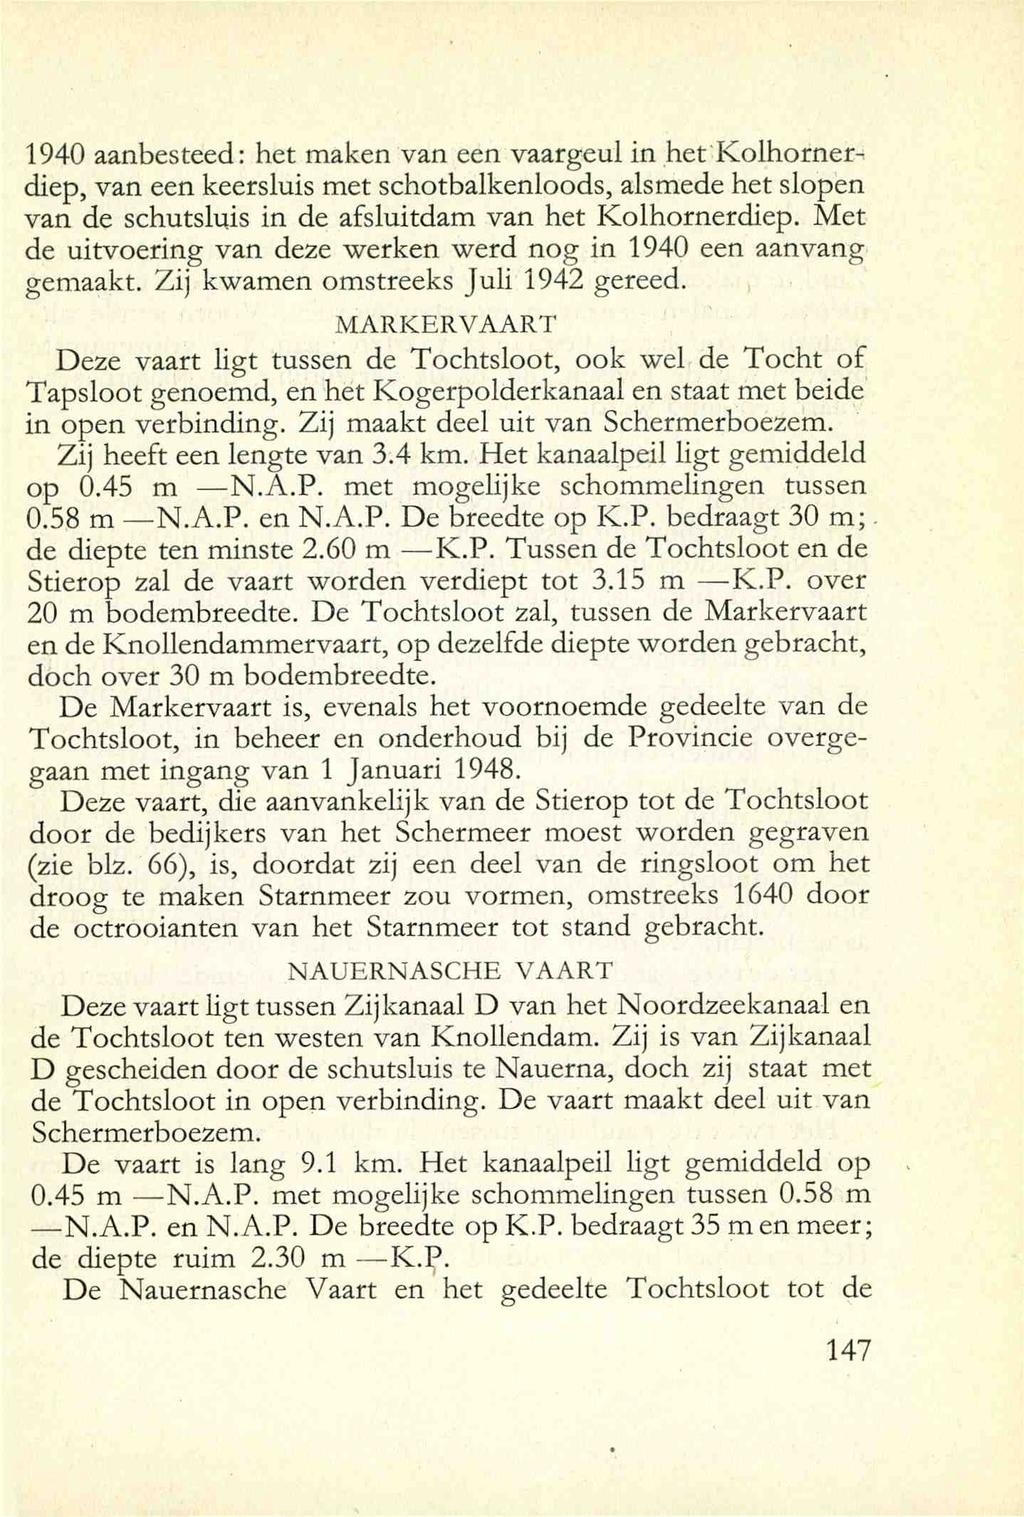 1940 aanbesteed: het maken van een vaargeul in hct Kolhorncrdiep, van een keersluis met schotbalkenloods, alsmede het slopen van de schutsluis in de afsluitdam van het Kolhornerdiep.